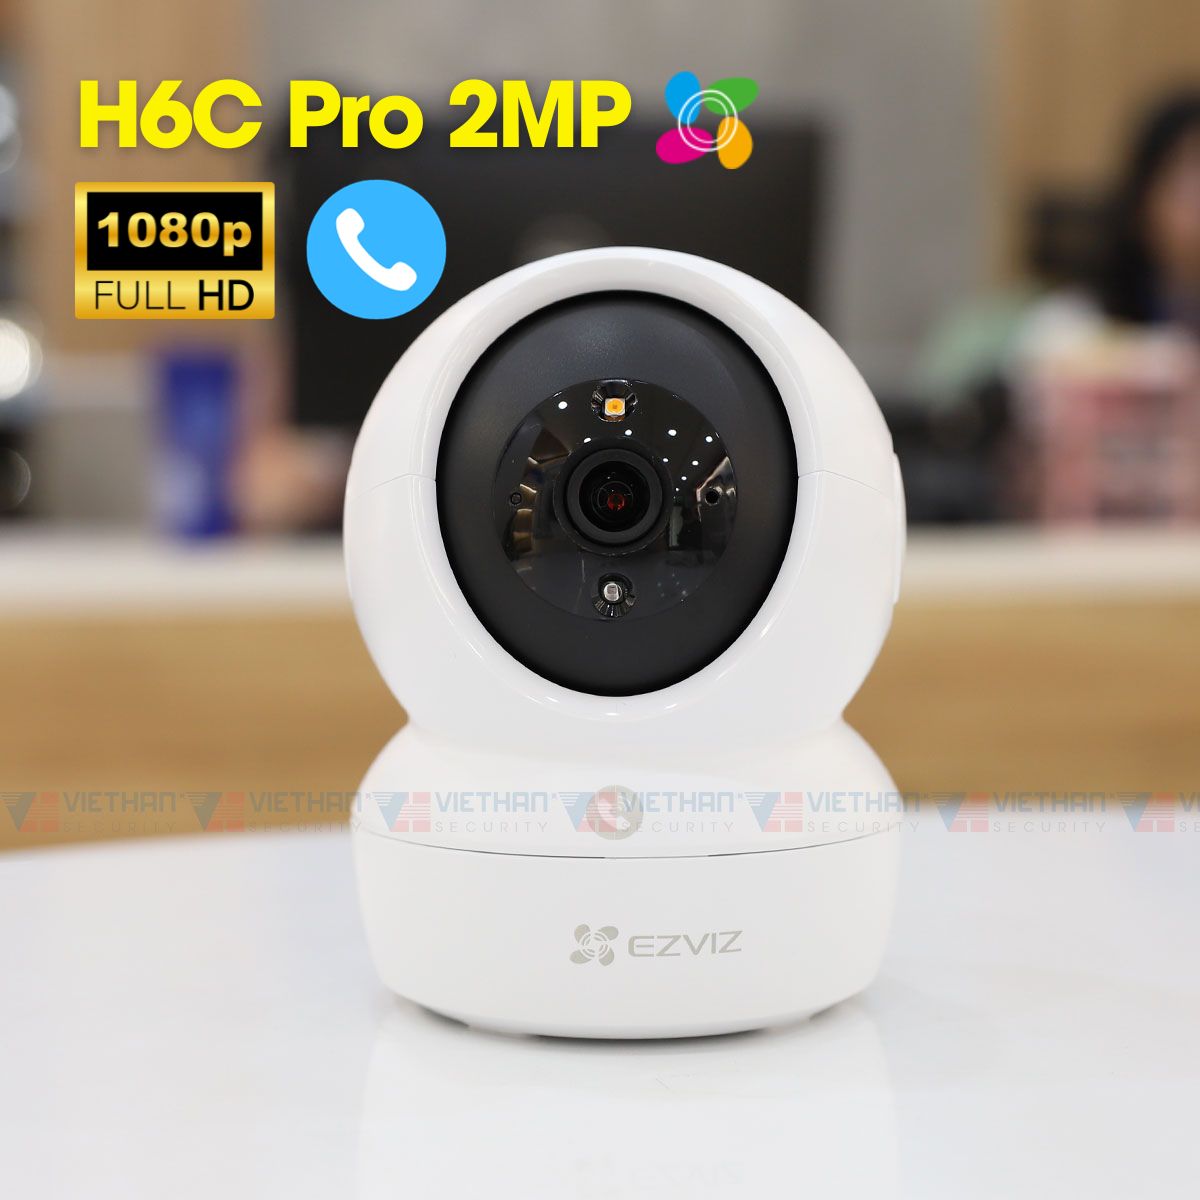 Camera Ezviz H6C Pro 1080P 2Mp, nút Call gọi điện, wifi, hồng ngoại 10m, theo dõi tự động